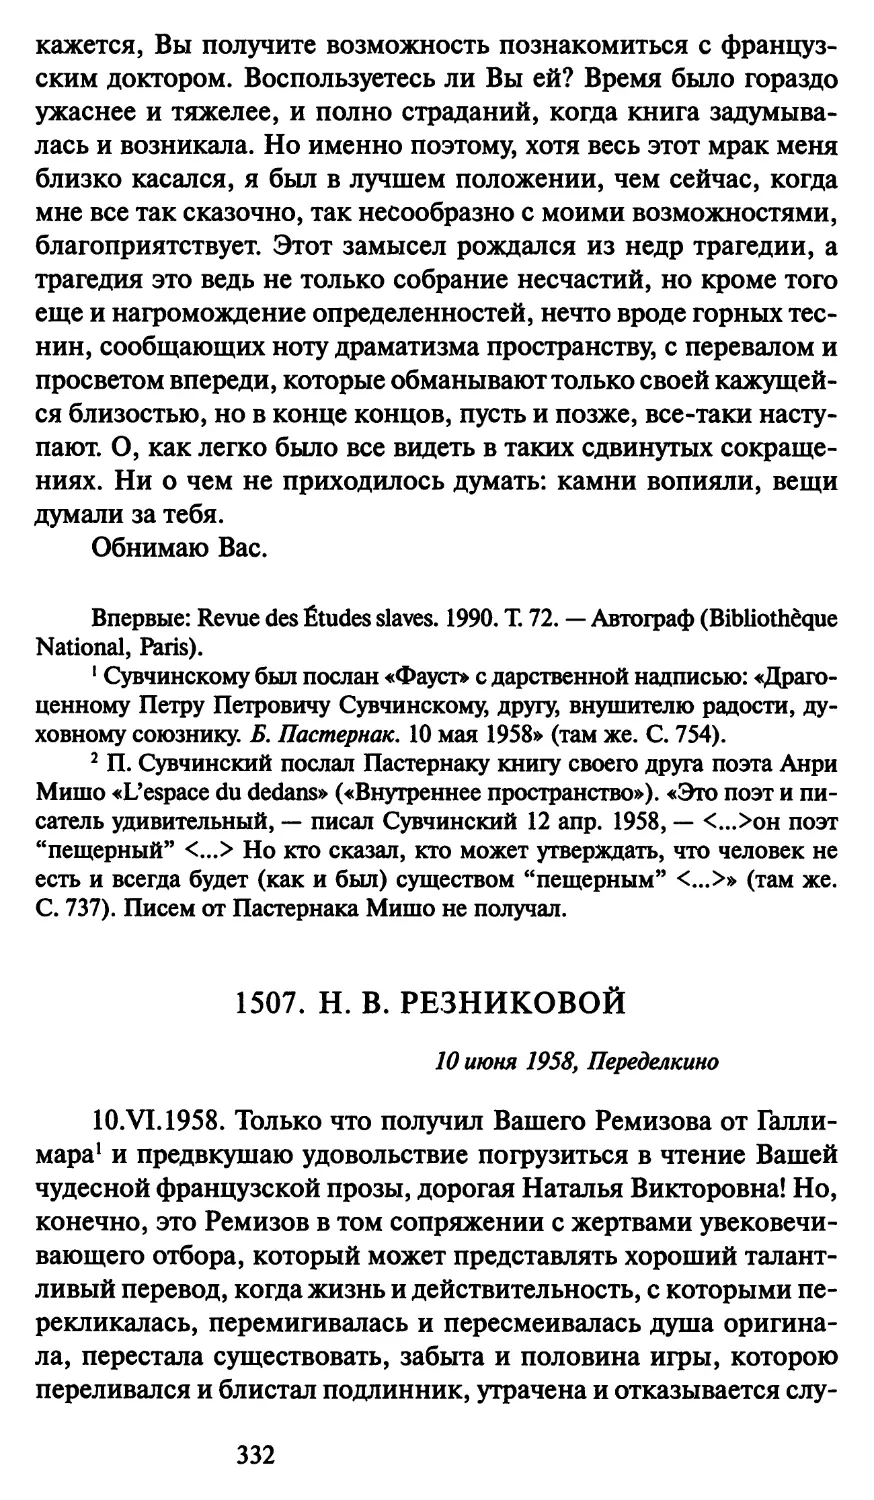 1507. Н. В. Резниковой 10 июня 1958